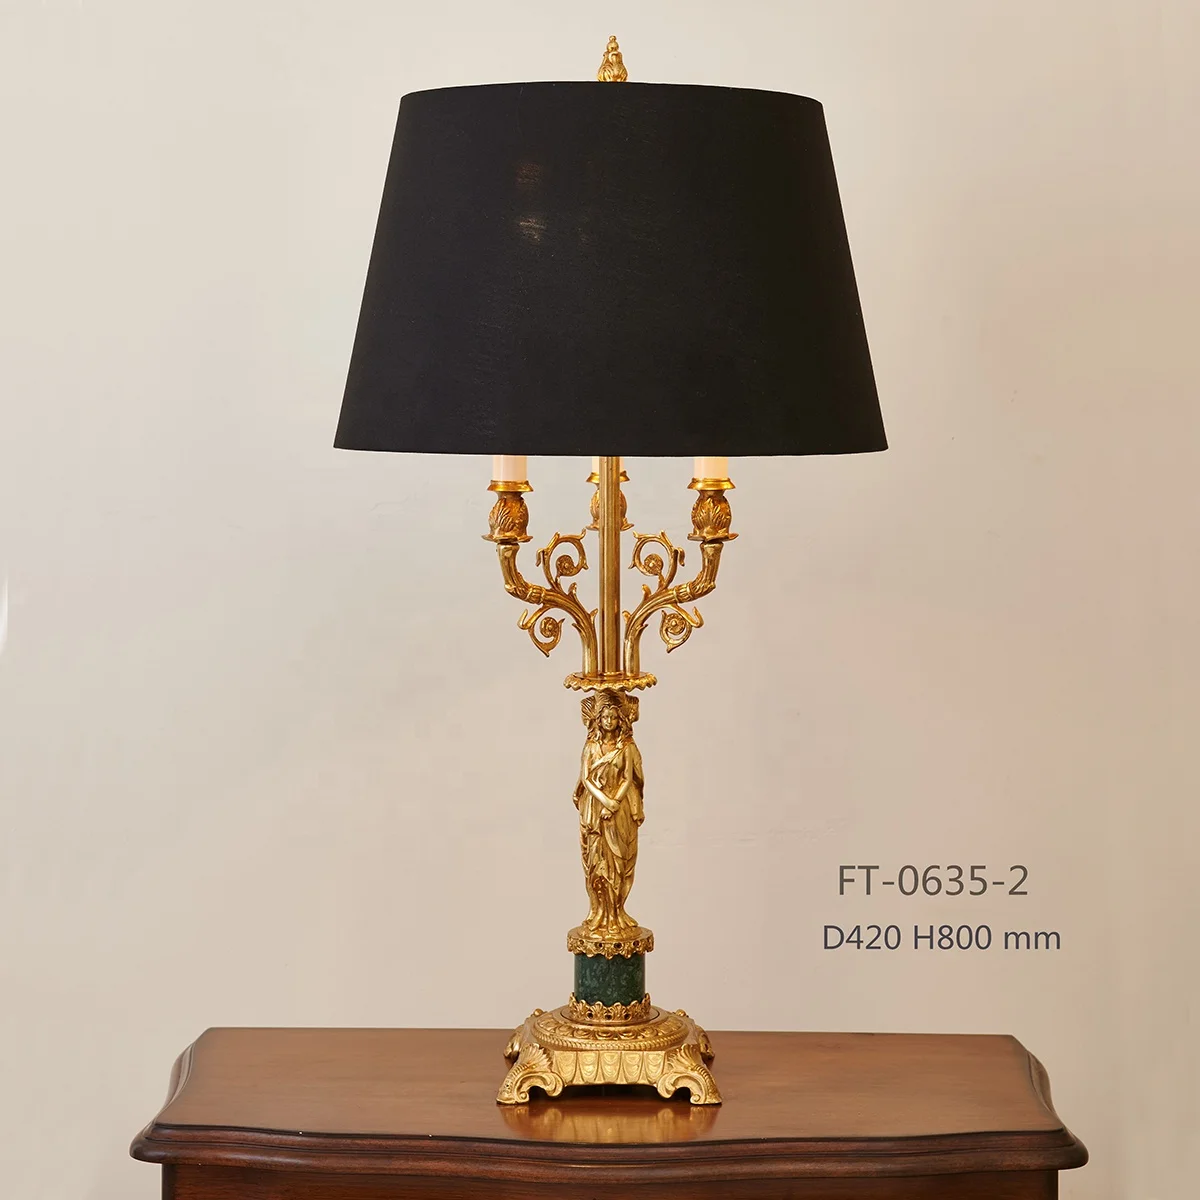 настольная лампа из латуни или меди с хрусталем ручной работы из воска с французским классическим абажуром из латуни5